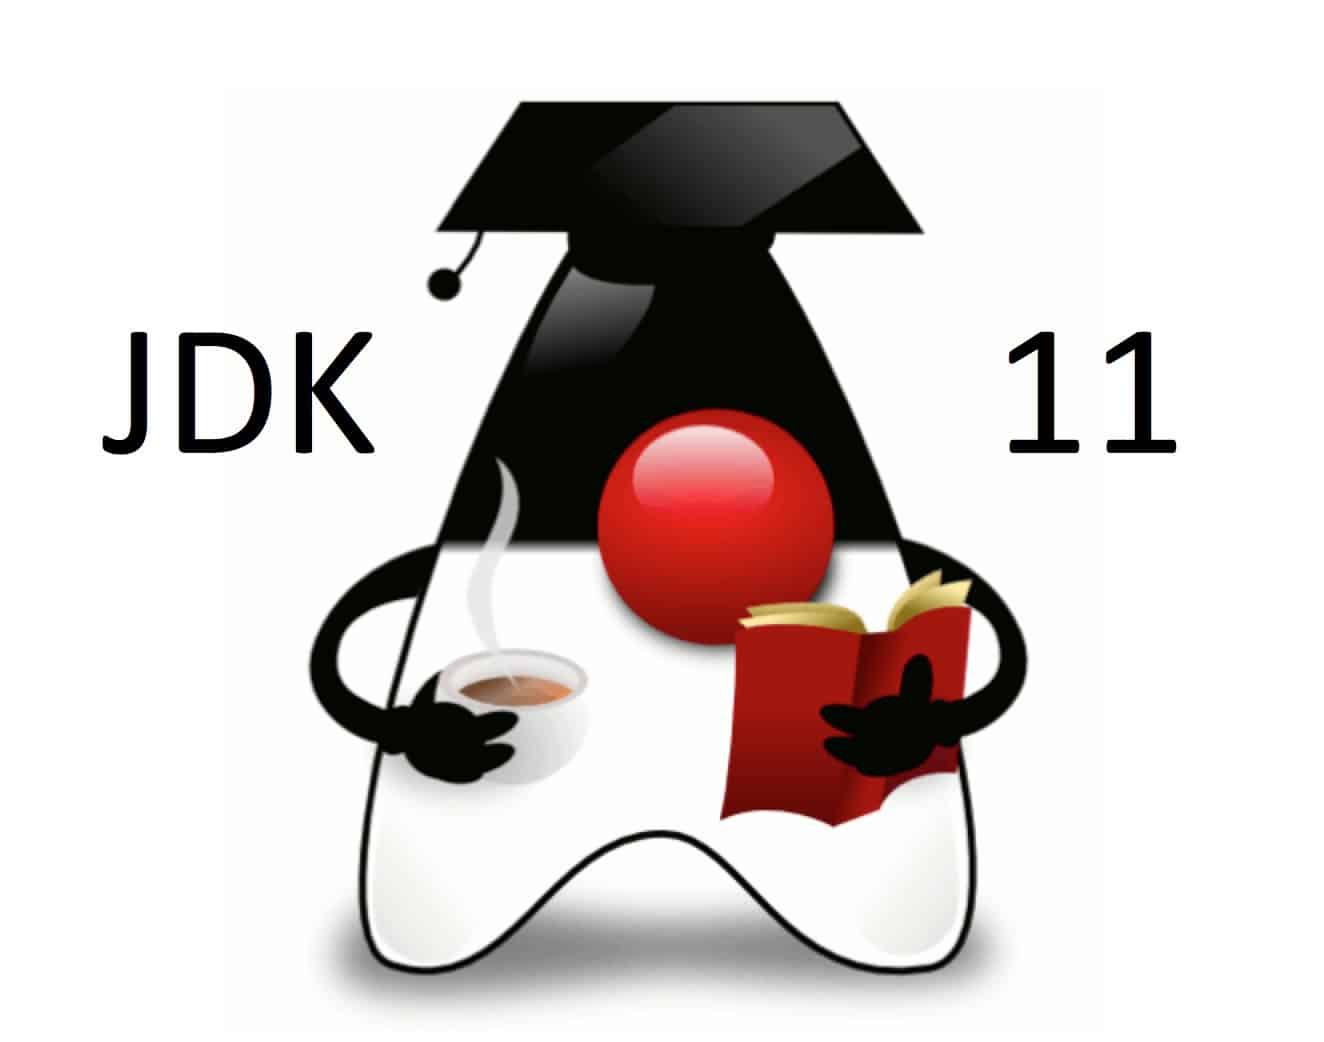 download jdk 11 for windows